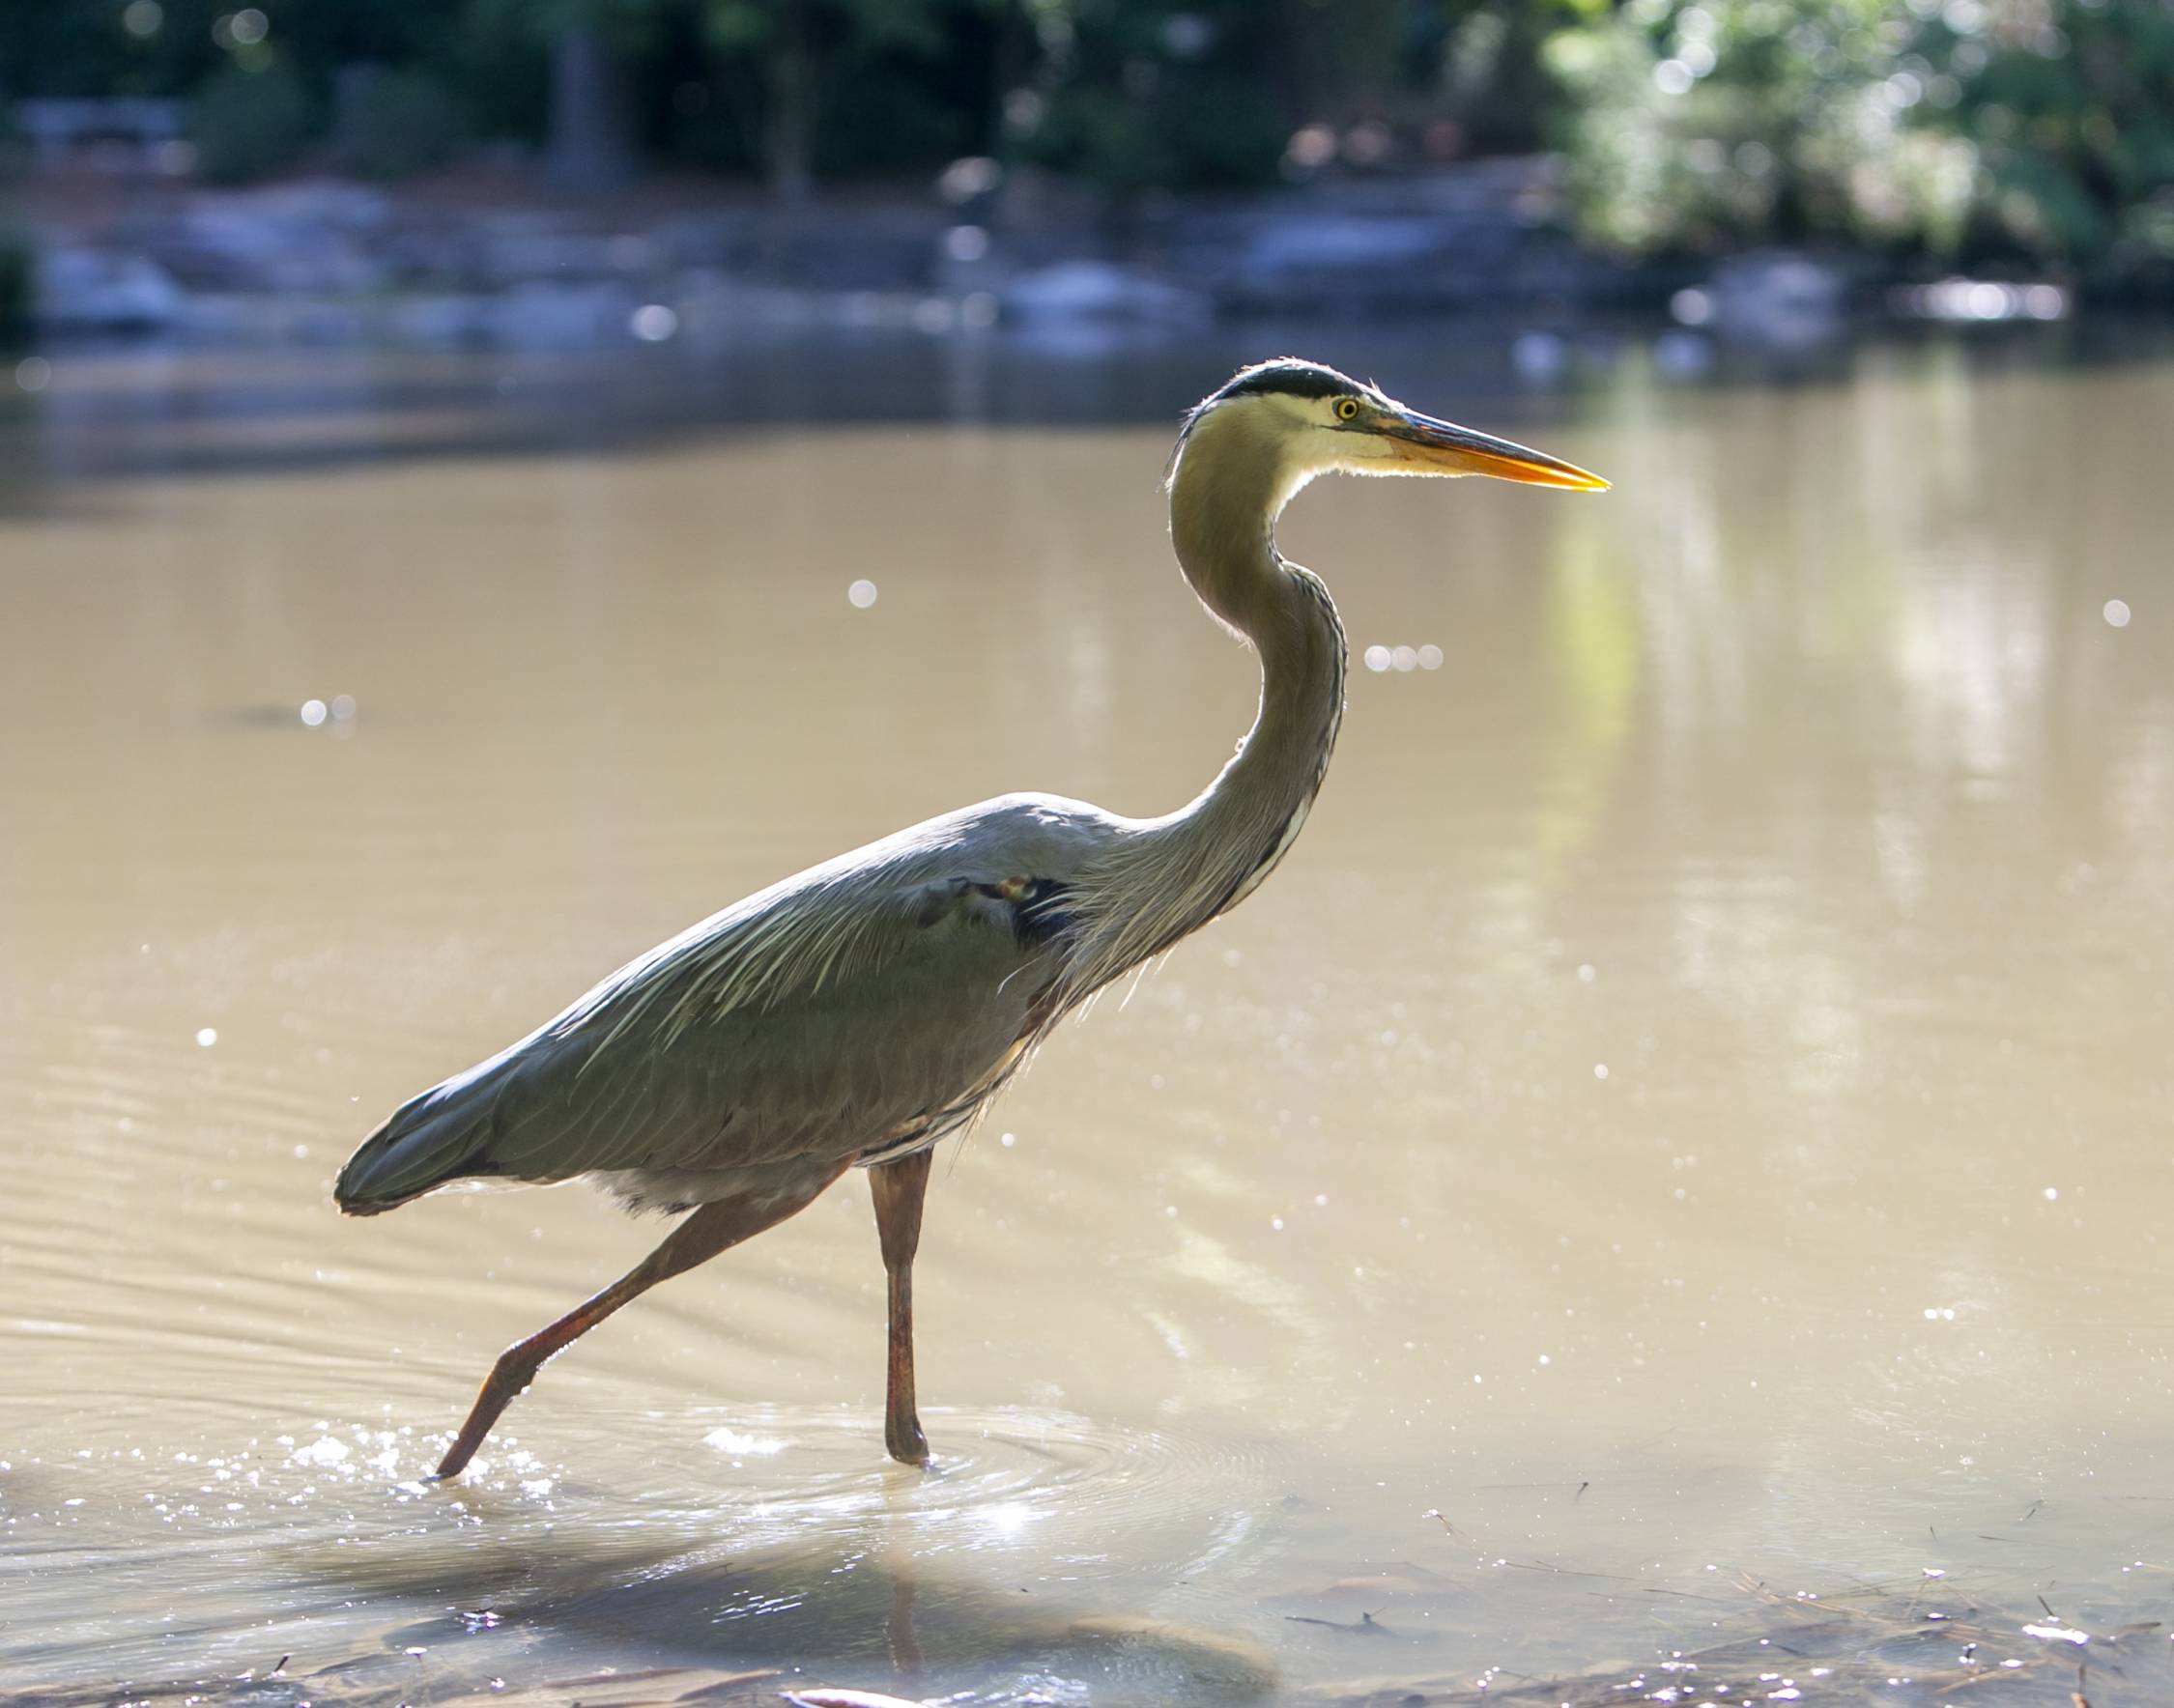 A heron takes a dip in Duke Gardens.